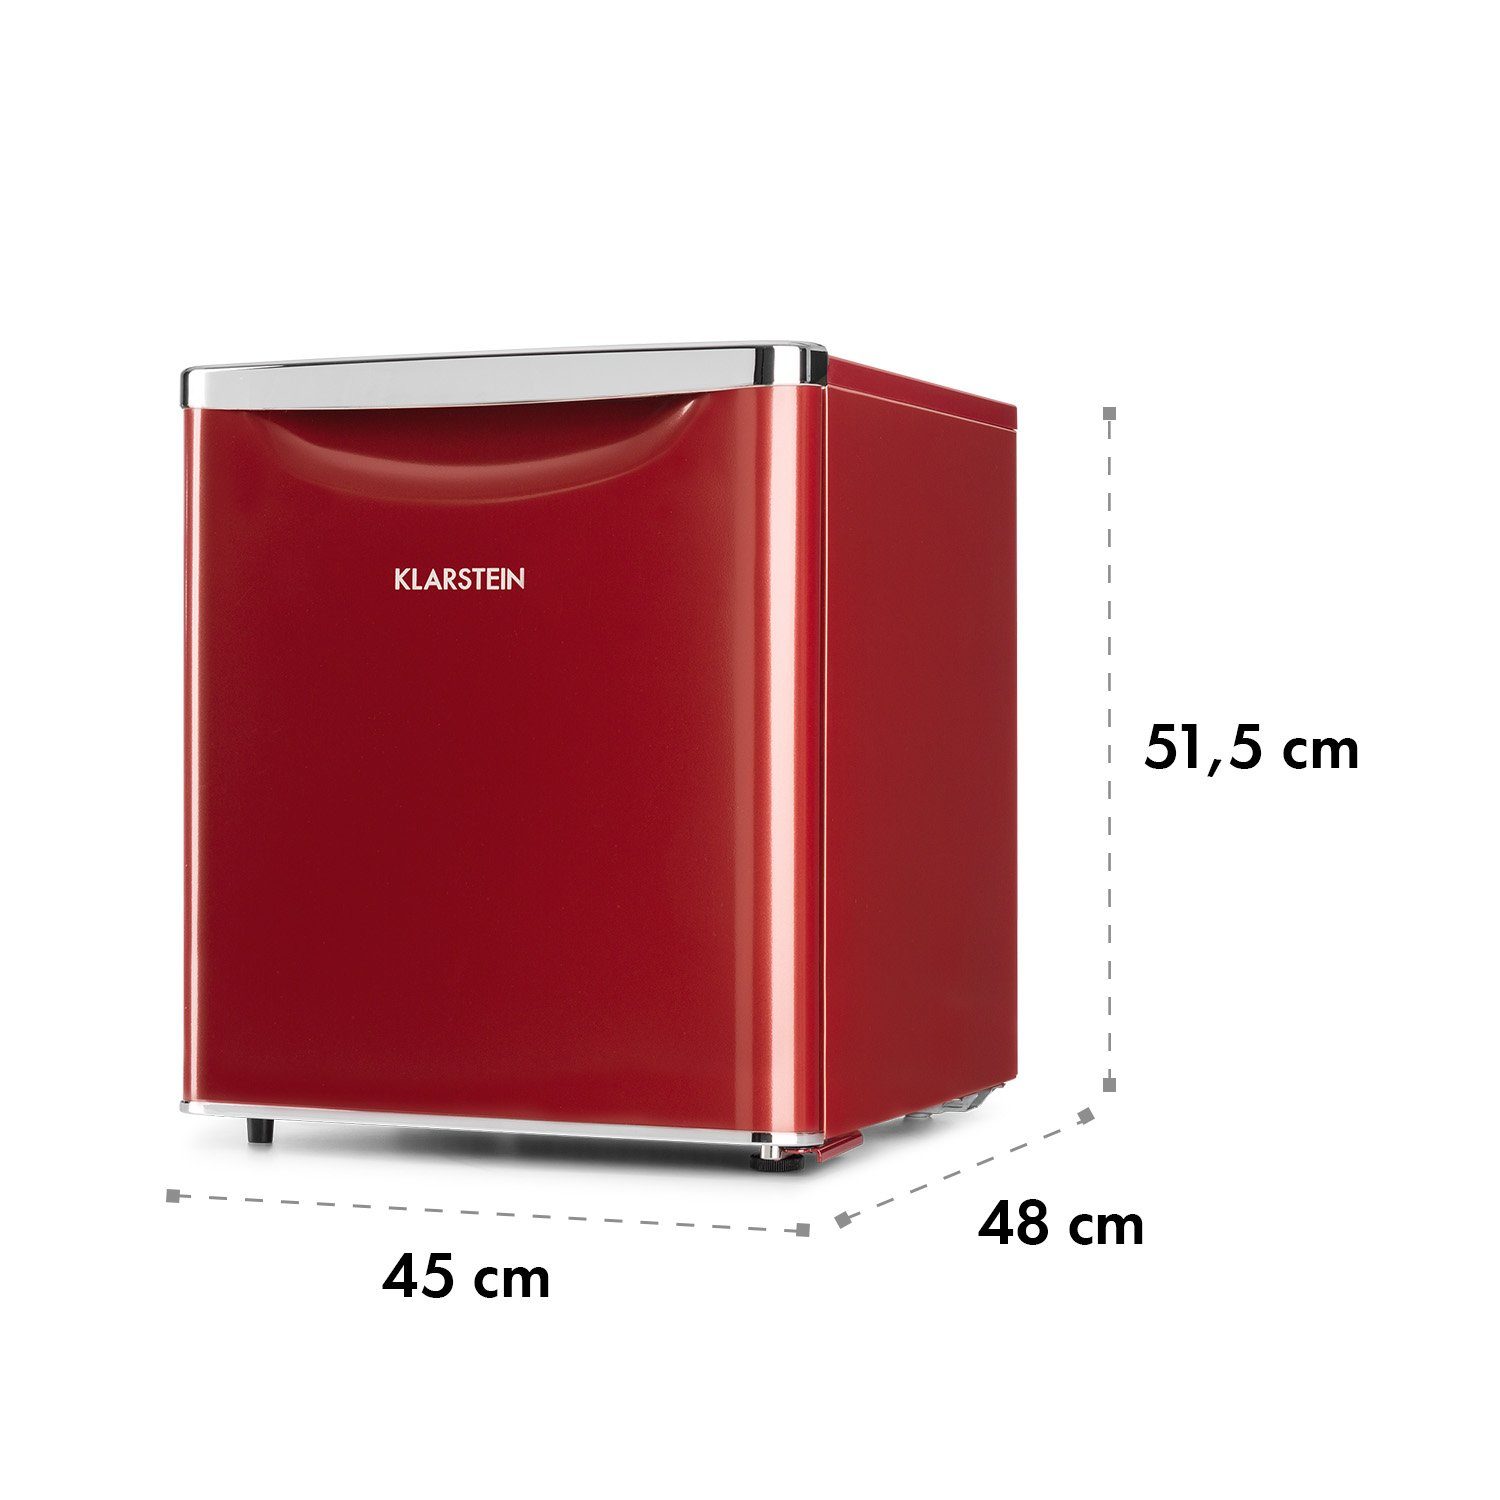 Kühlschrank cm 45 HEA19-Yummy-50-red 10035215, Table breit Top Rot hoch, cm Klarstein 51